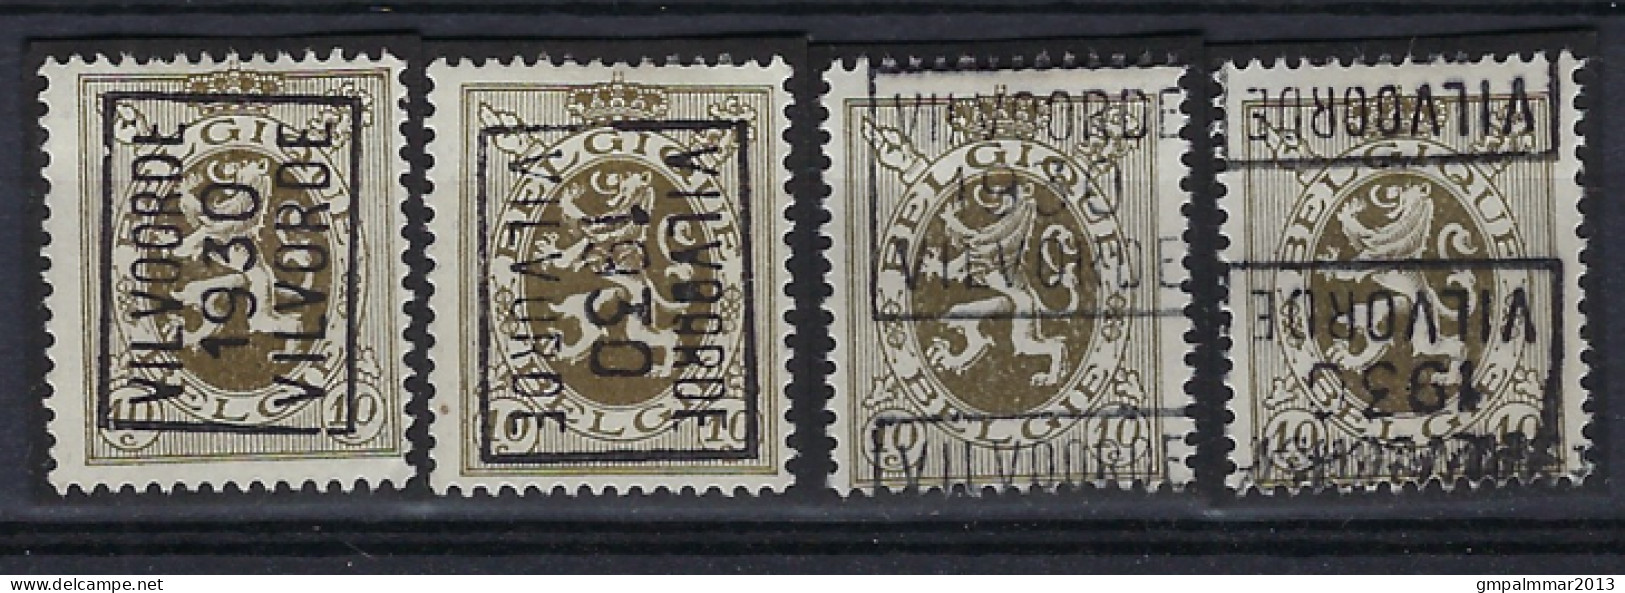 Zegel Nr. 288 Voorafgestempeld Nr. 5859 A + B + C + D VILVOORDE 1930 VILVORDE ; Staat Zie Scan ! - Rollenmarken 1930-..